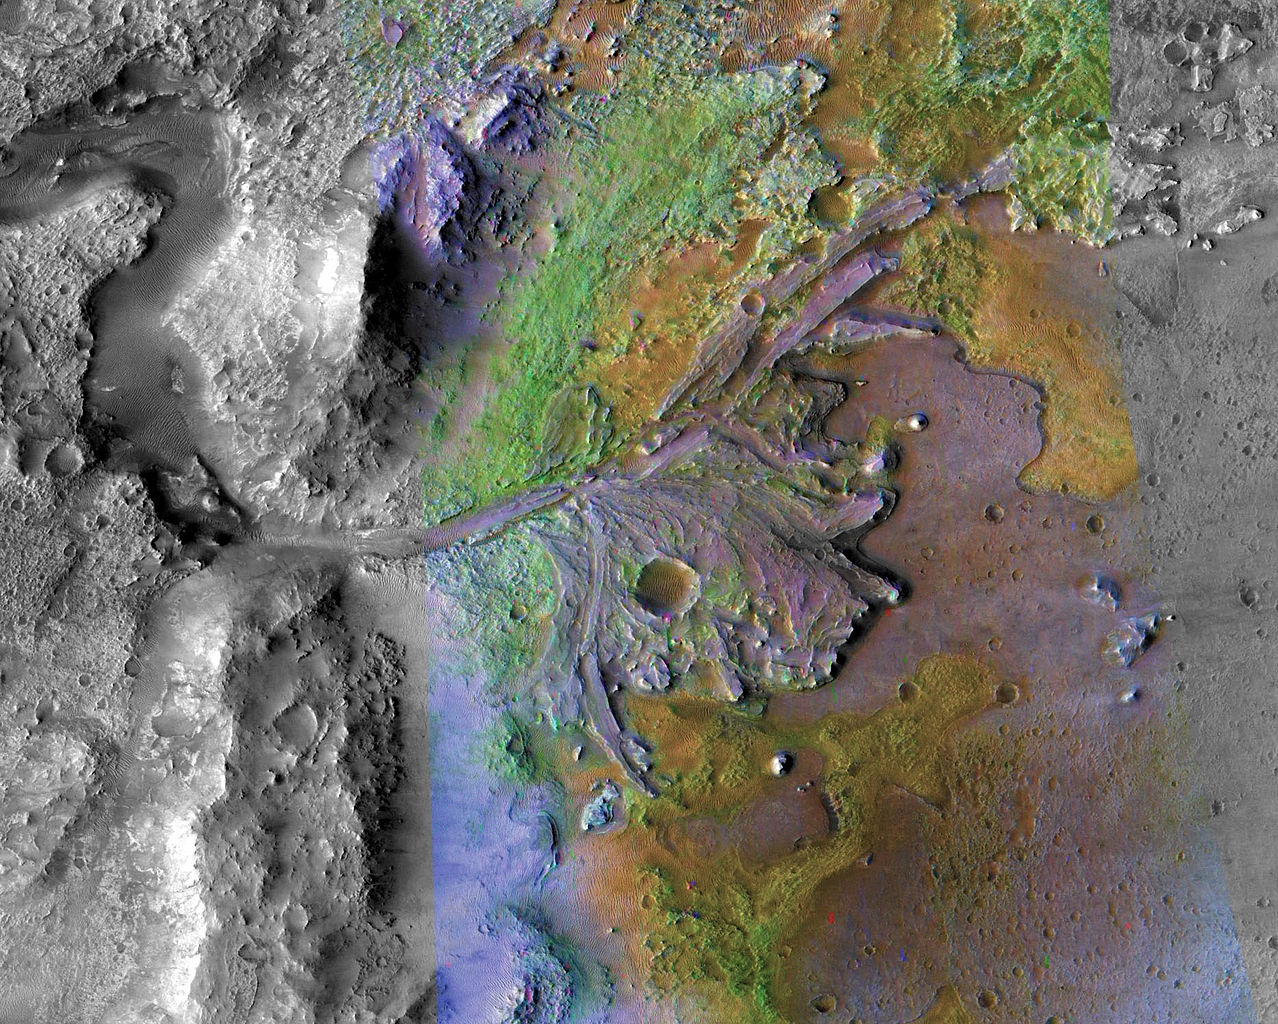 Delta en el cráter Jezero en Marte. Fuente: NASA/JPL/JHUAPL/MSSS/Brown University.